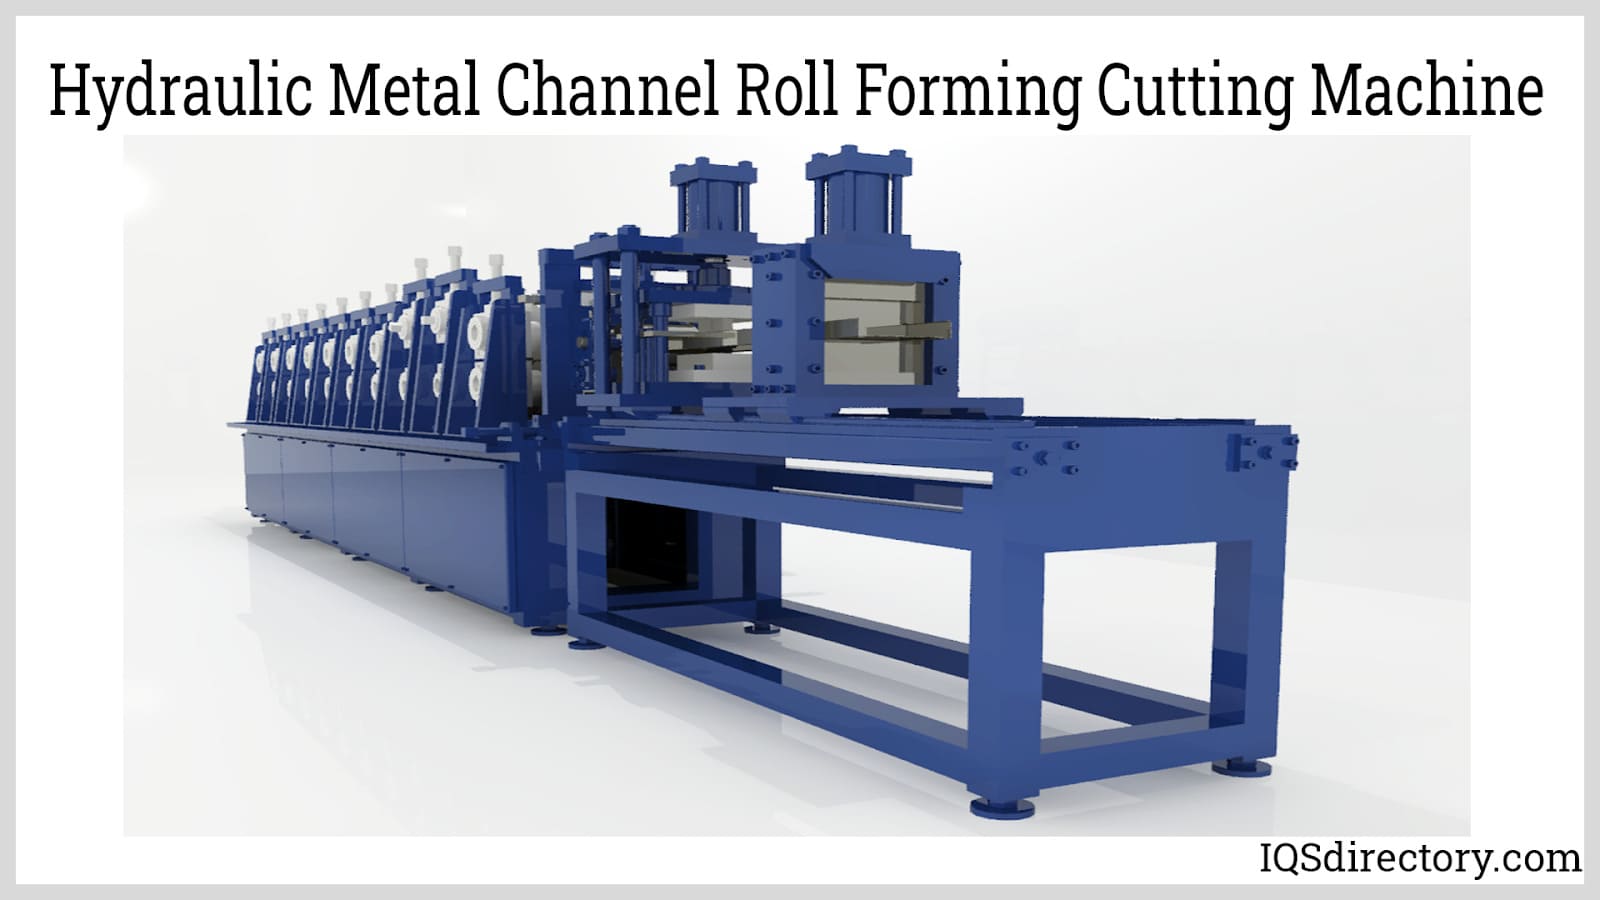 Hydraulic Metal Channel Roll Forming Cutting Machine